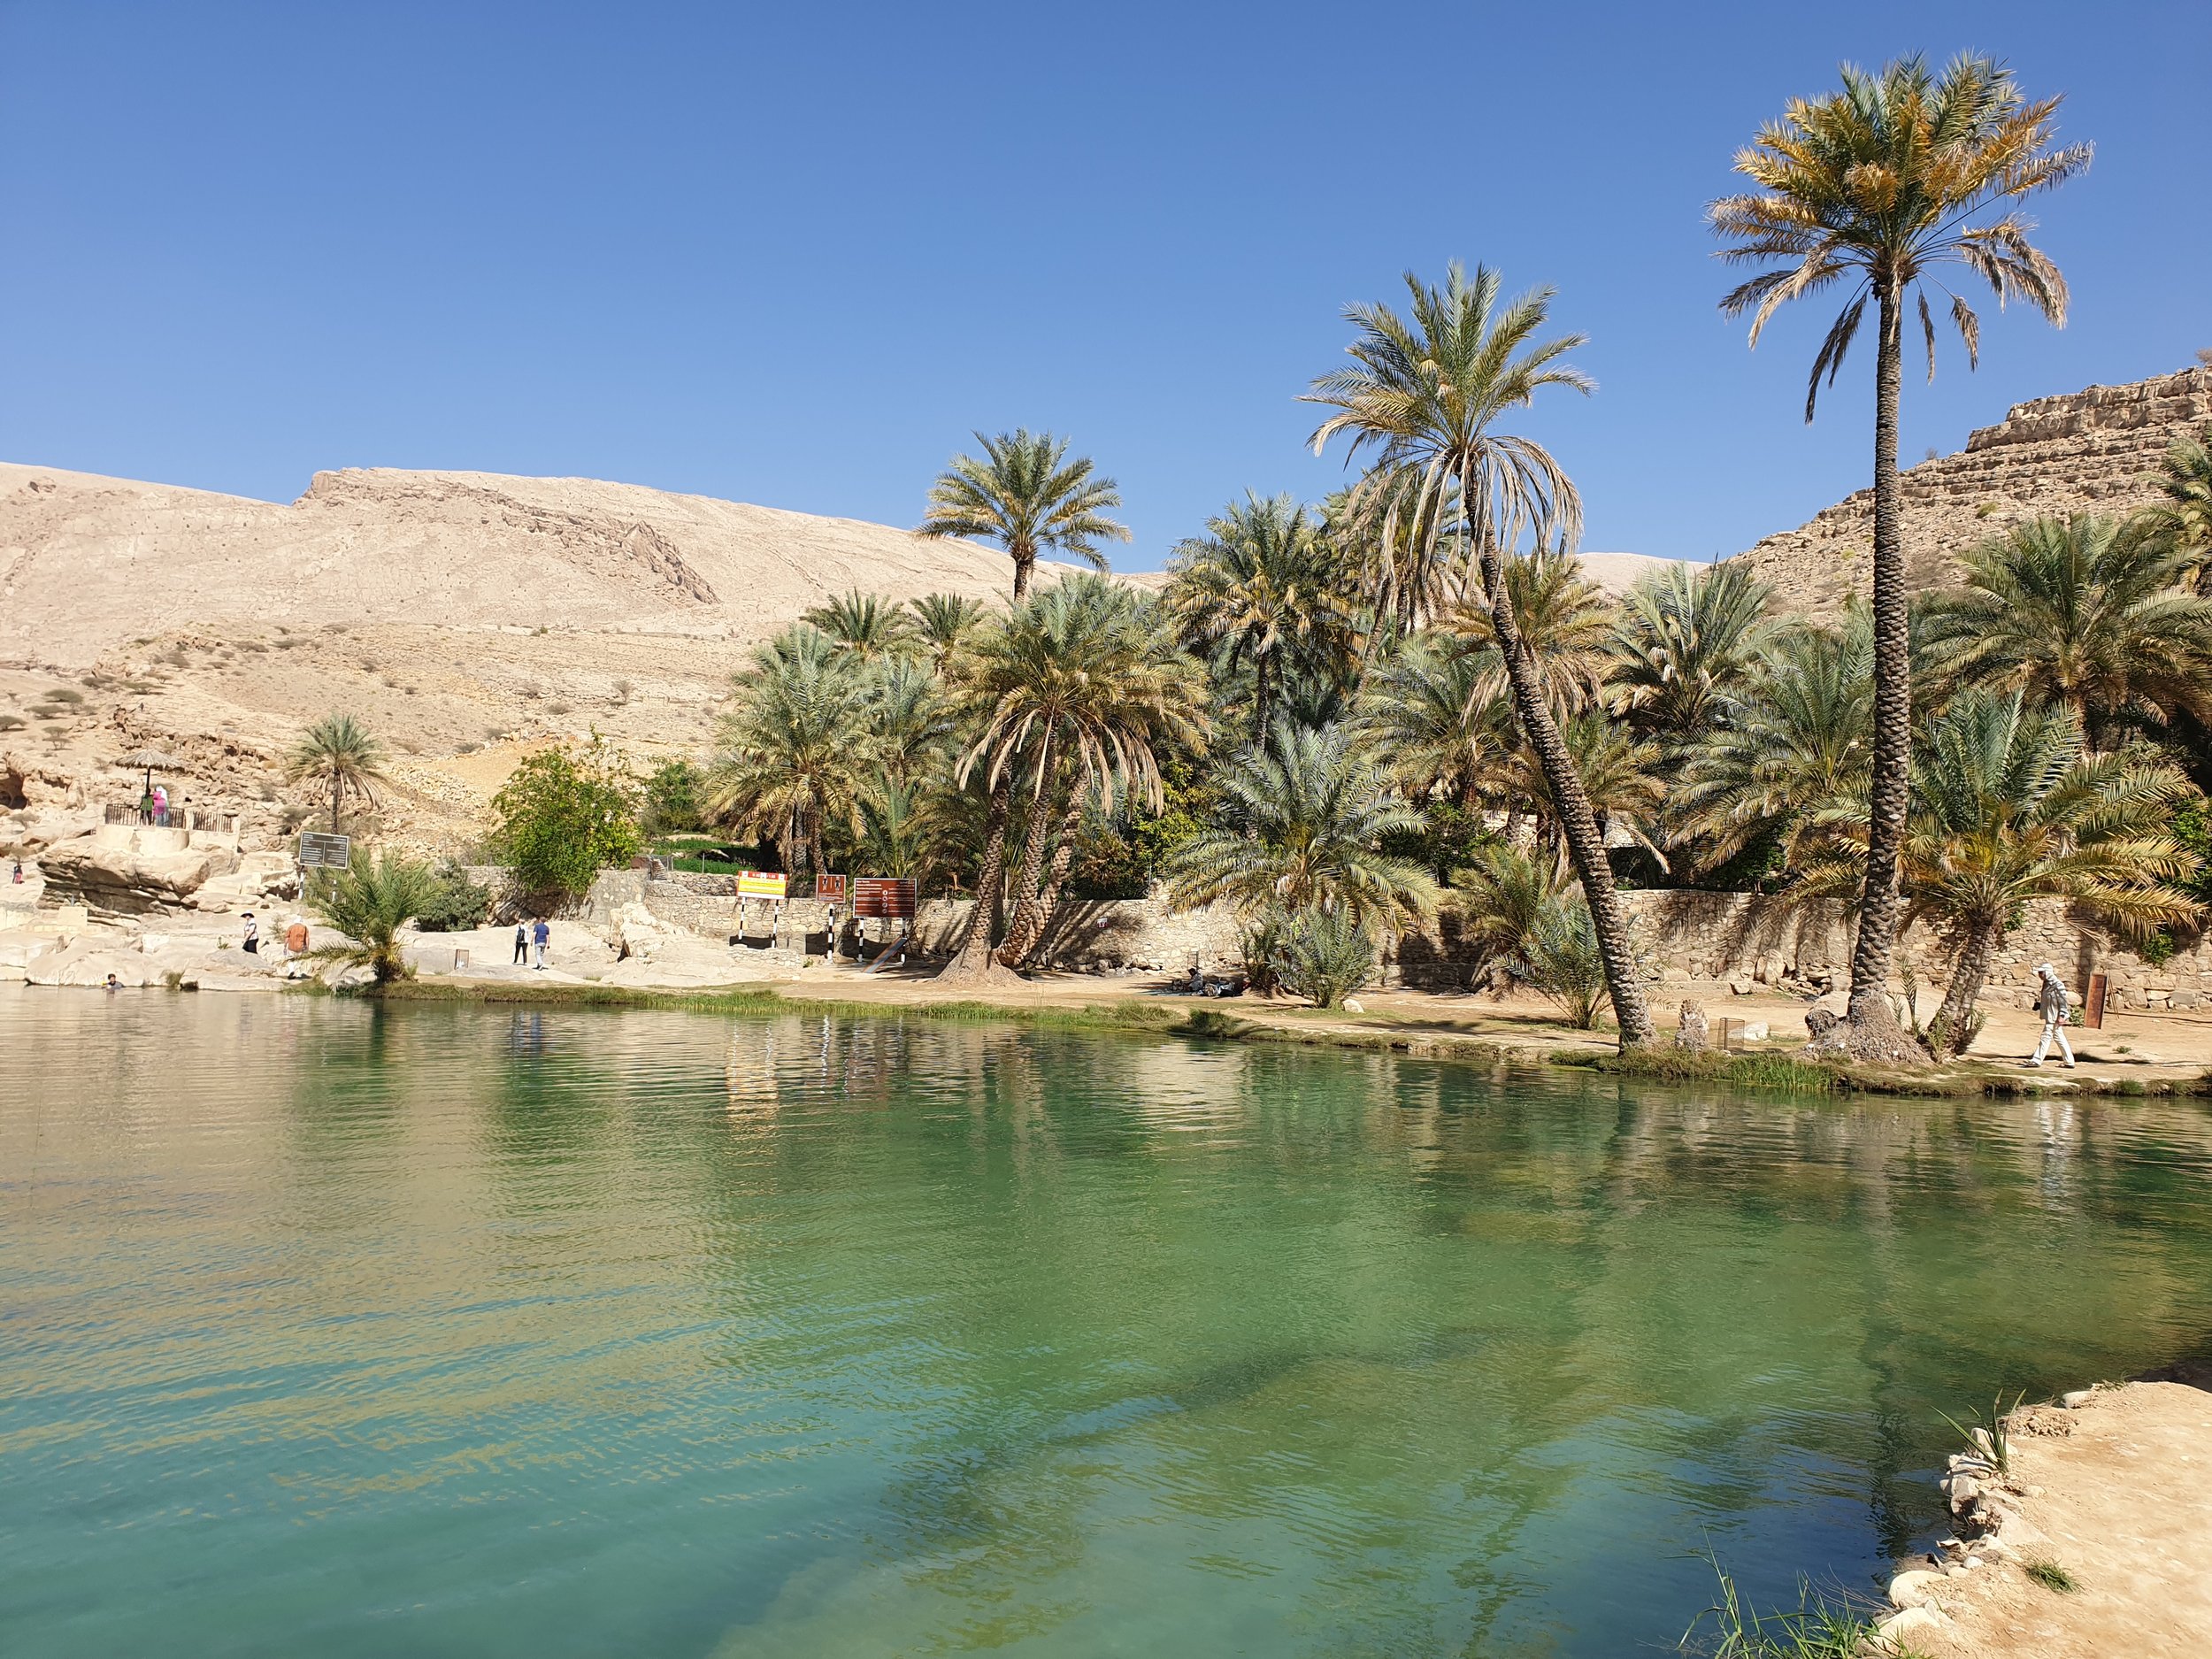 Visite di Al Maamari - Wadi Bani Khalid